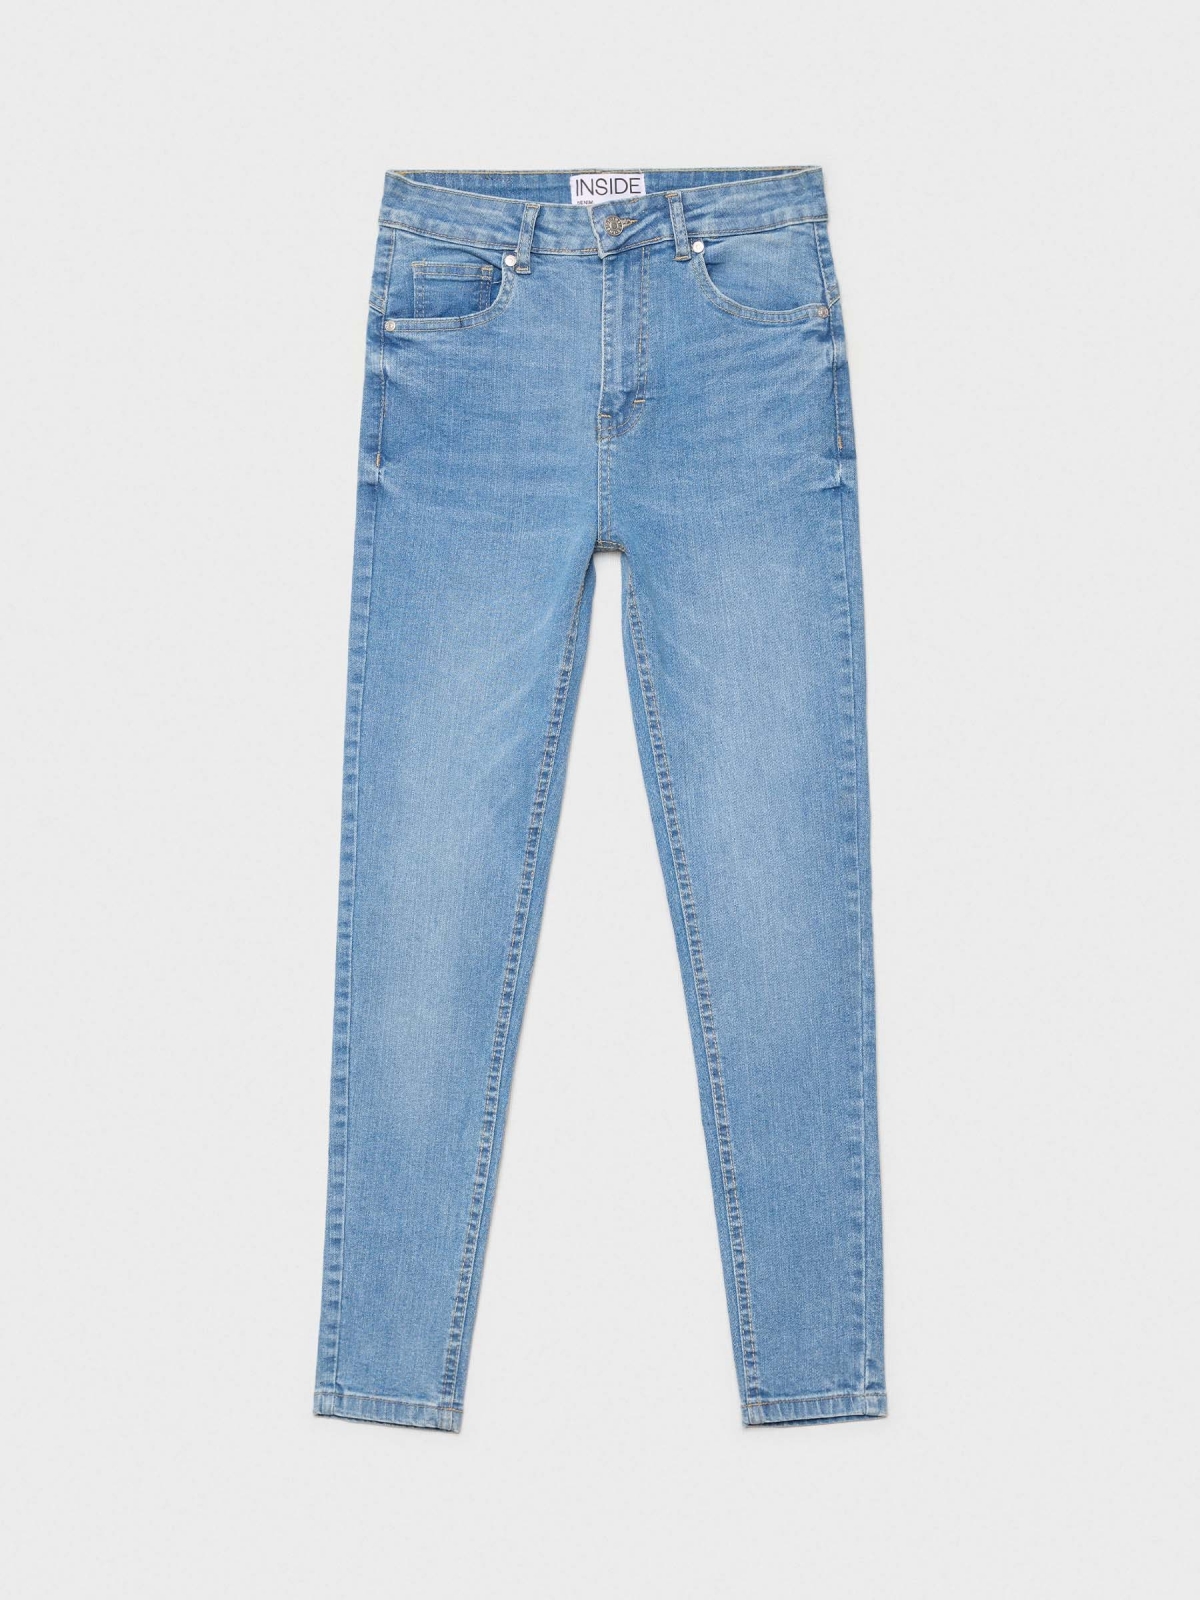  Jeans skinny push-up de cintura alta azul aço